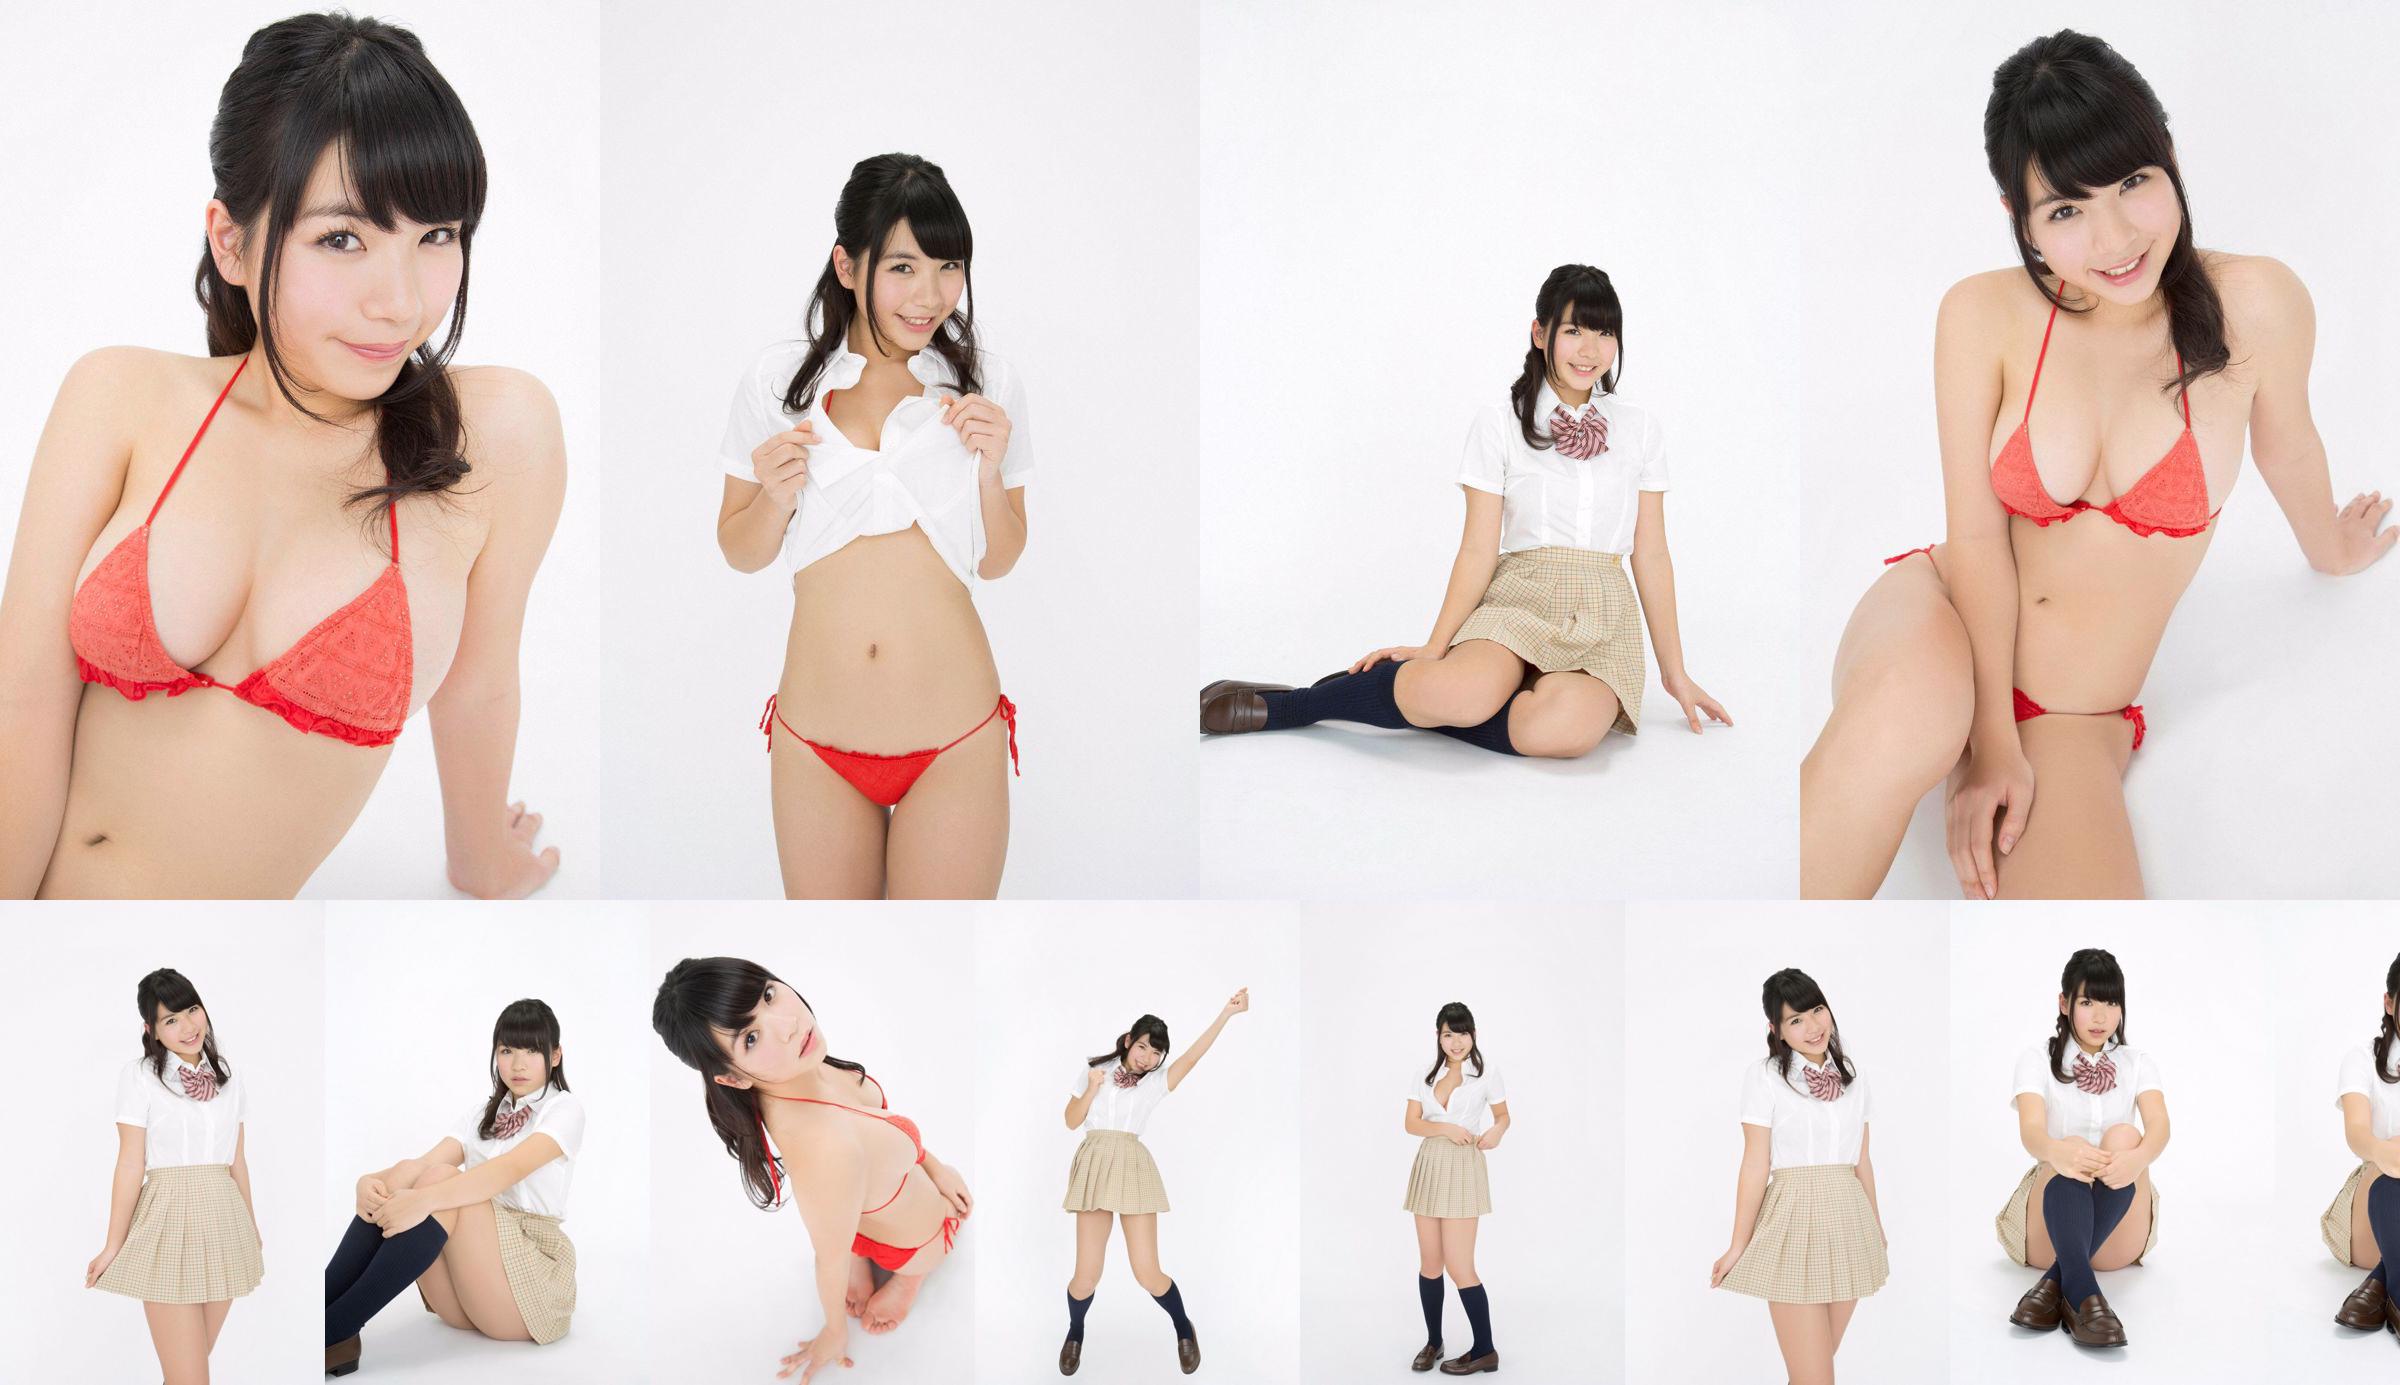 Jun Serizawa / Jun Serizawa "Một nữ sinh trung học năng động, lùn nhất Nhật Bản グ ラ ド ル nhập học! No.b76e37 Trang 1